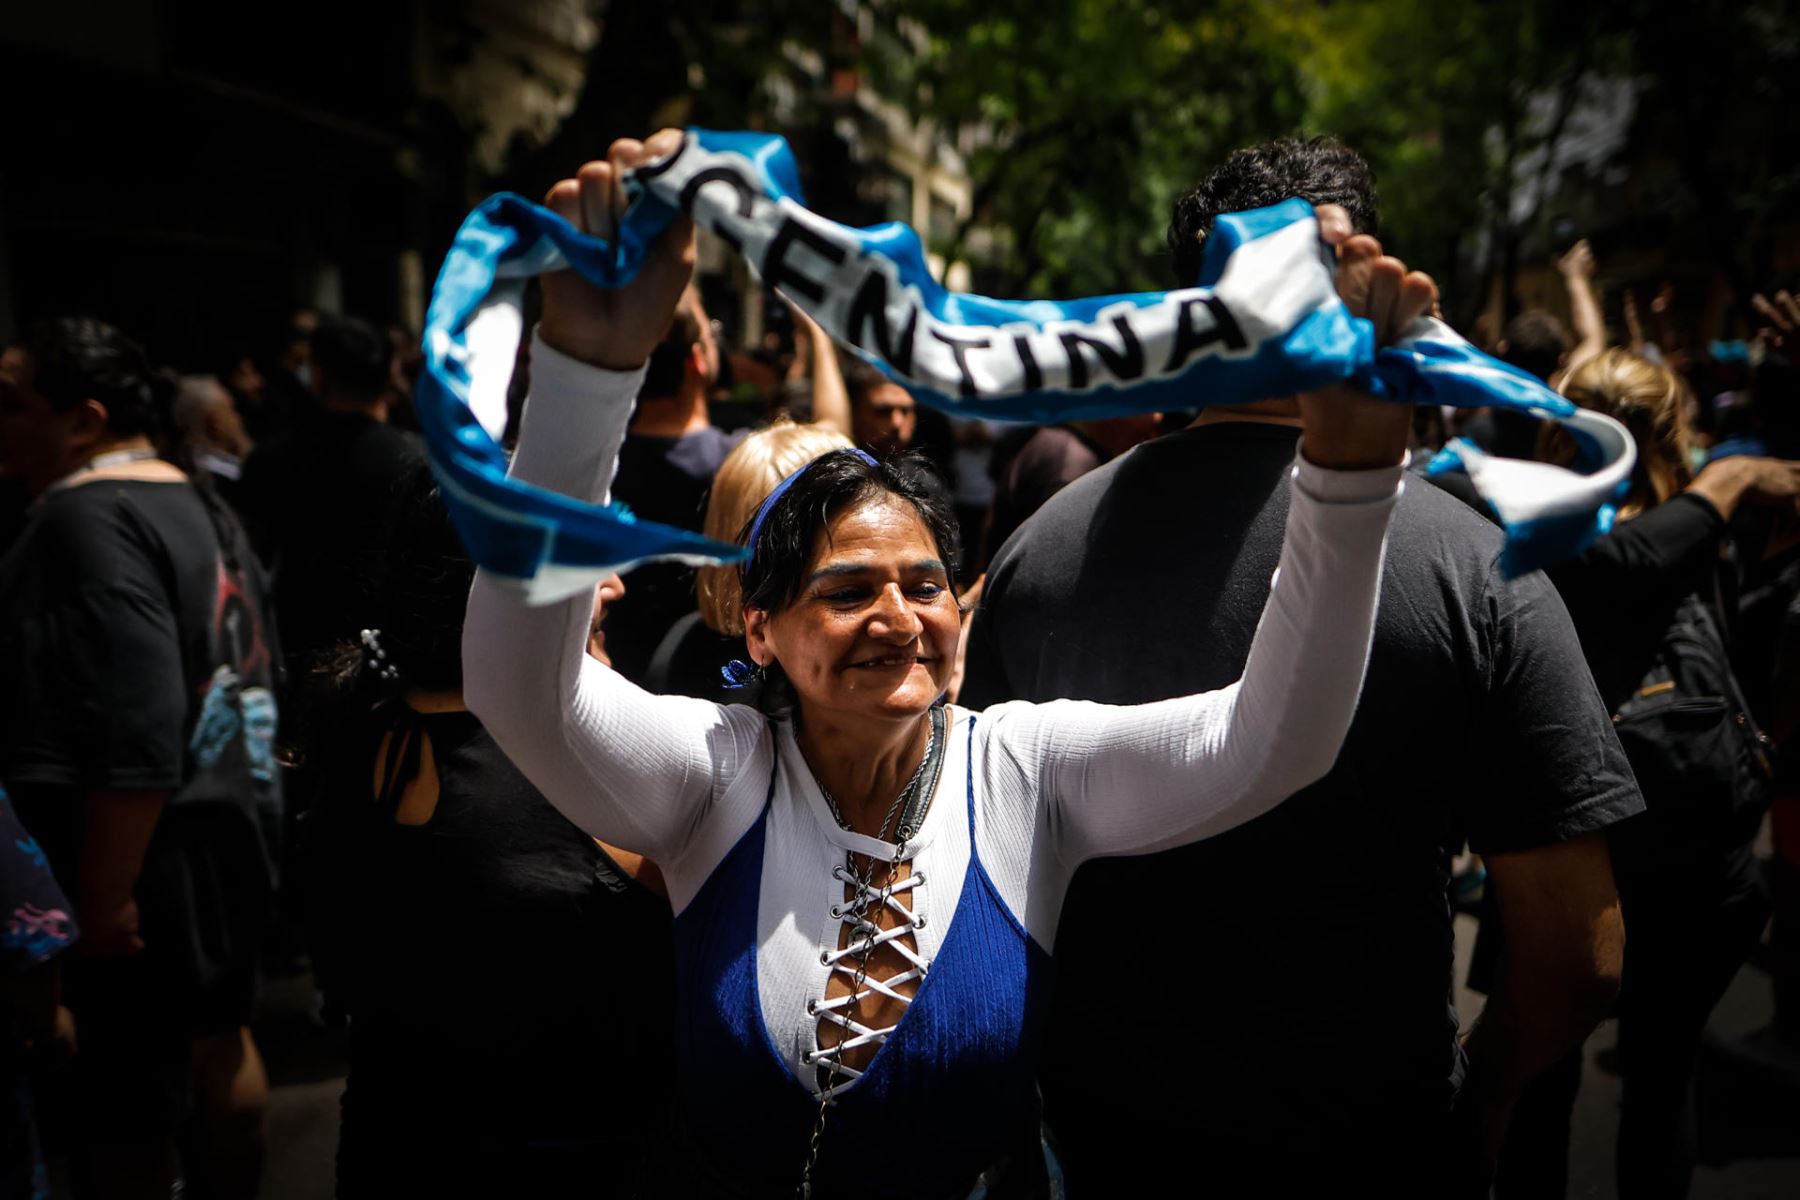 Seguidores apoyan al candidato a la Presidencia de Argentina de La Libertad Avanza, Javier Milei hoy, en Buenos Aires (Argentina). Milei, se mostró este domingo "tranquilo" y "satisfecho" tras votar para el balotaje entre él y el aspirante oficialista, Sergio Massa, a pesar de la "campaña del miedo" que, señaló, le hizo su rival.
Foto: EFE